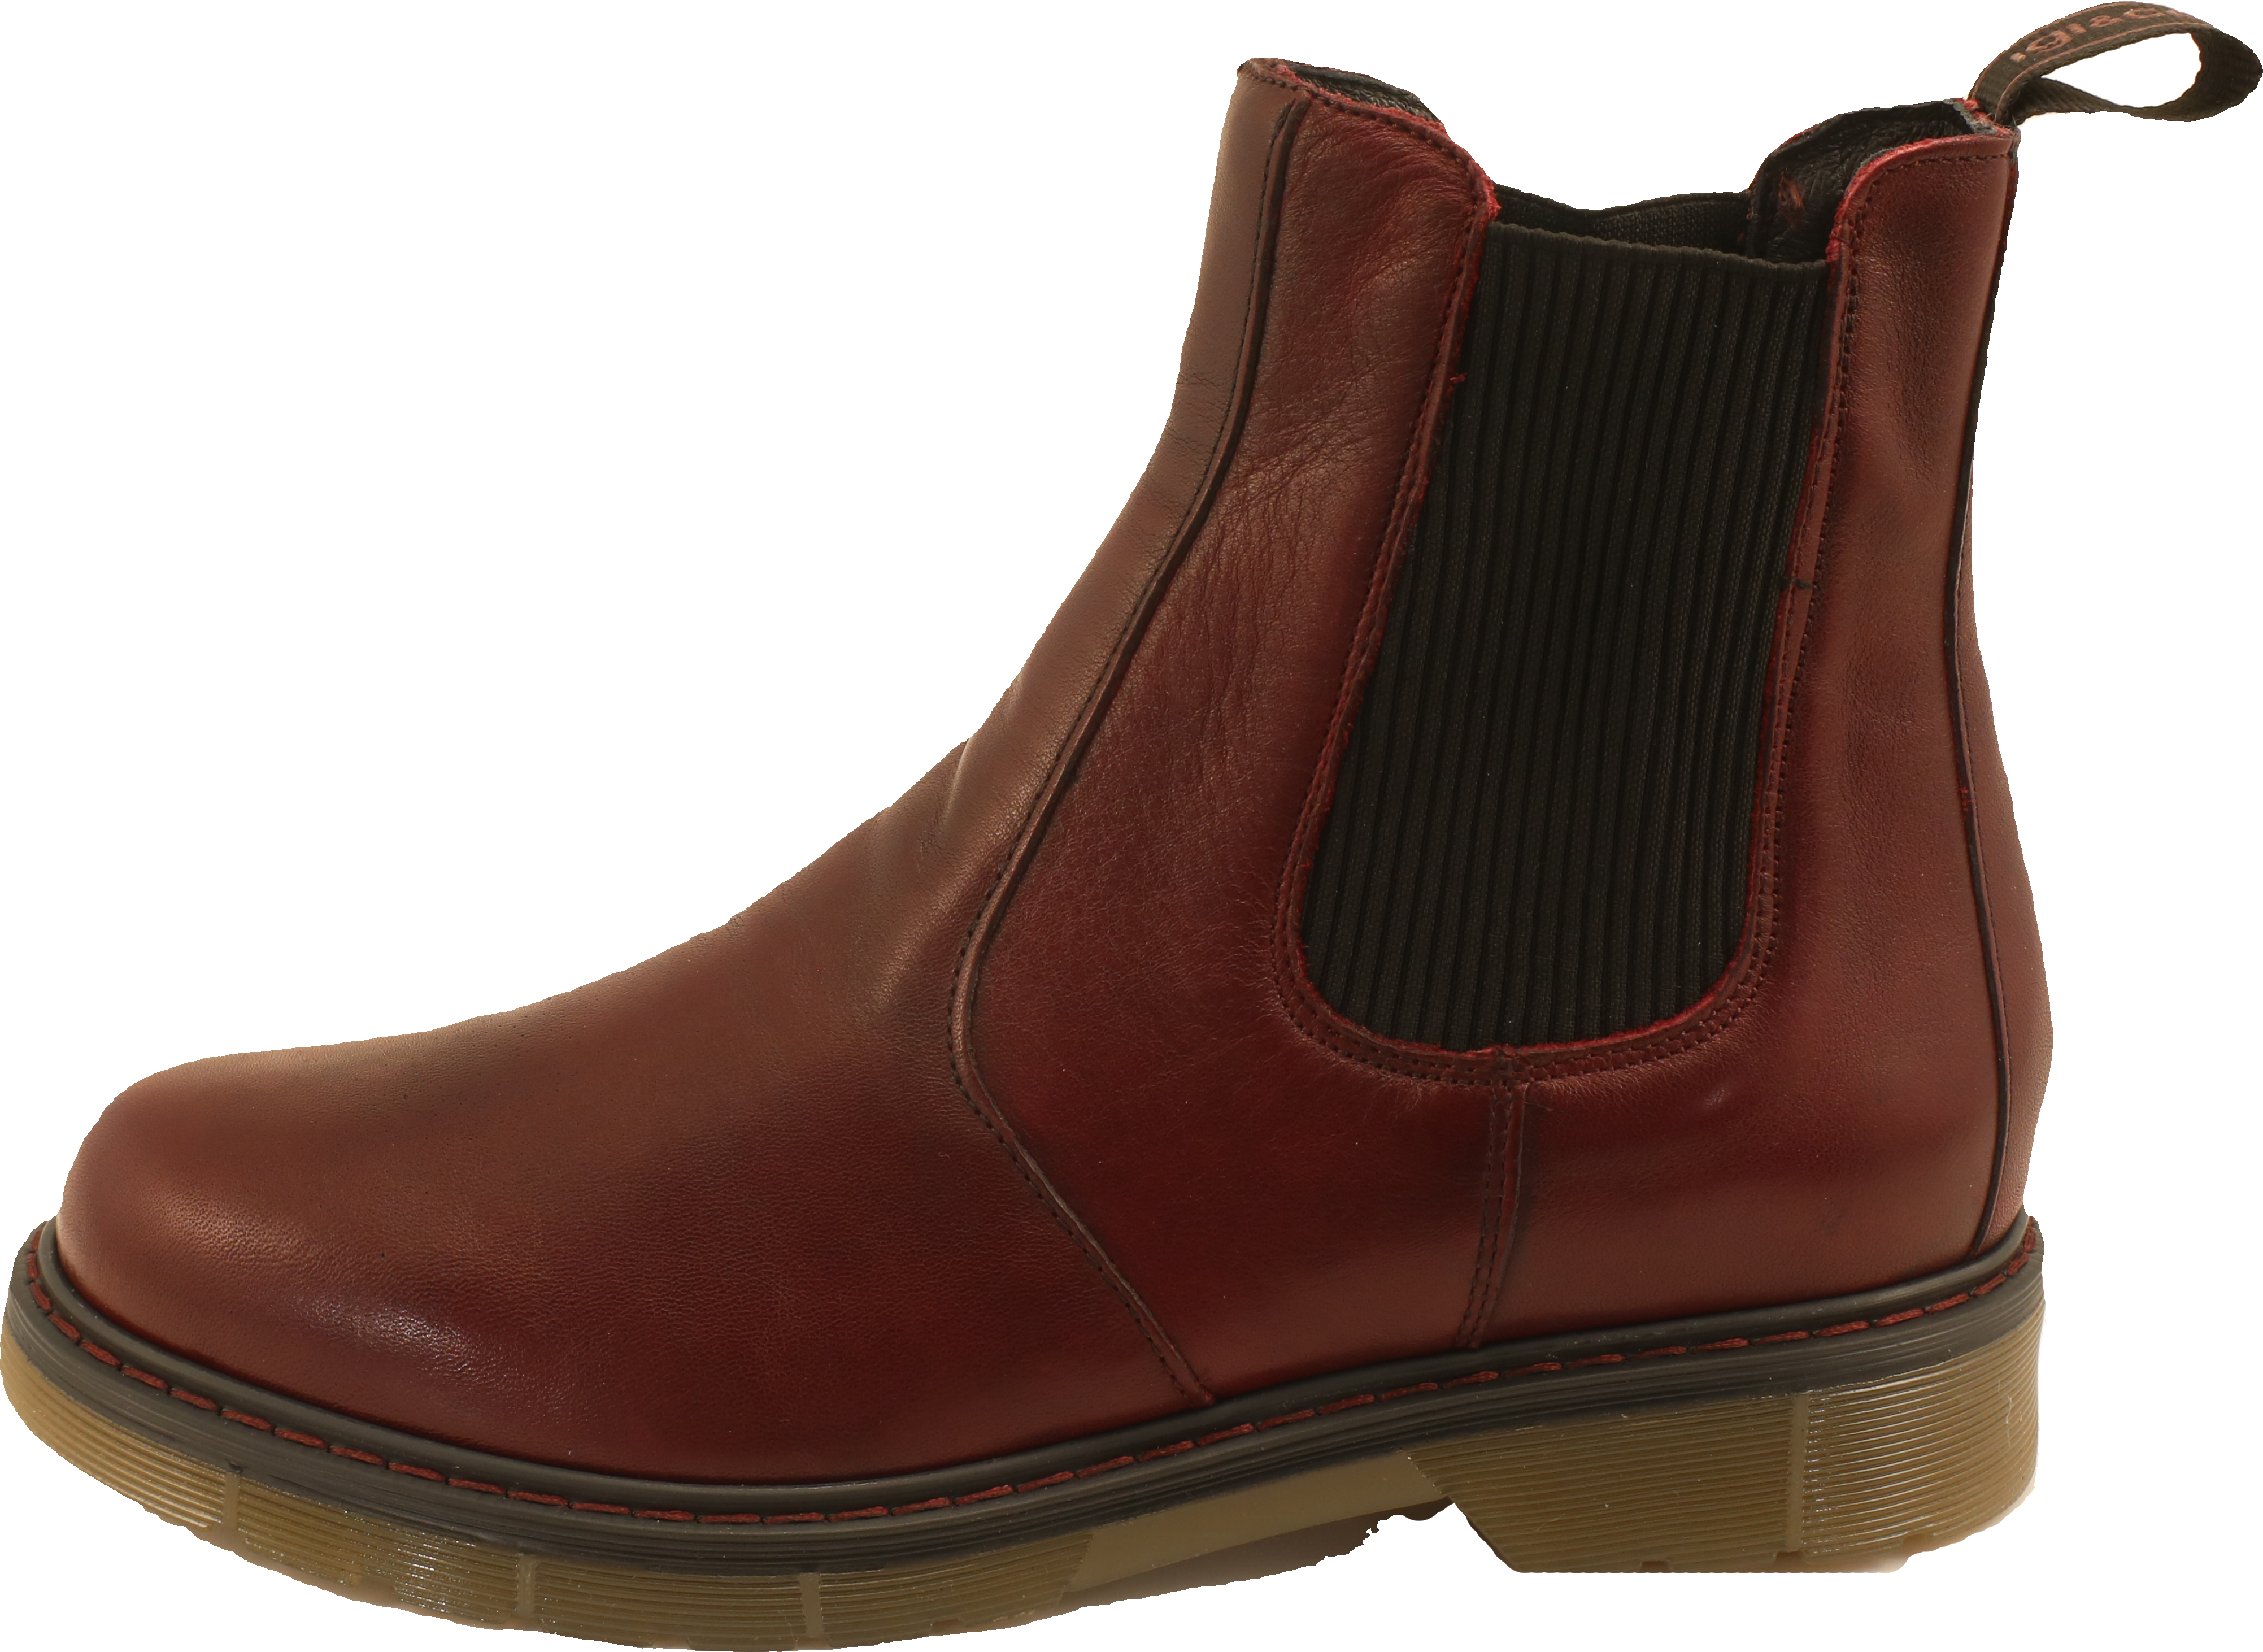 IGI&CO Dld 81883 - Vitello Antik - Bordo suede leather